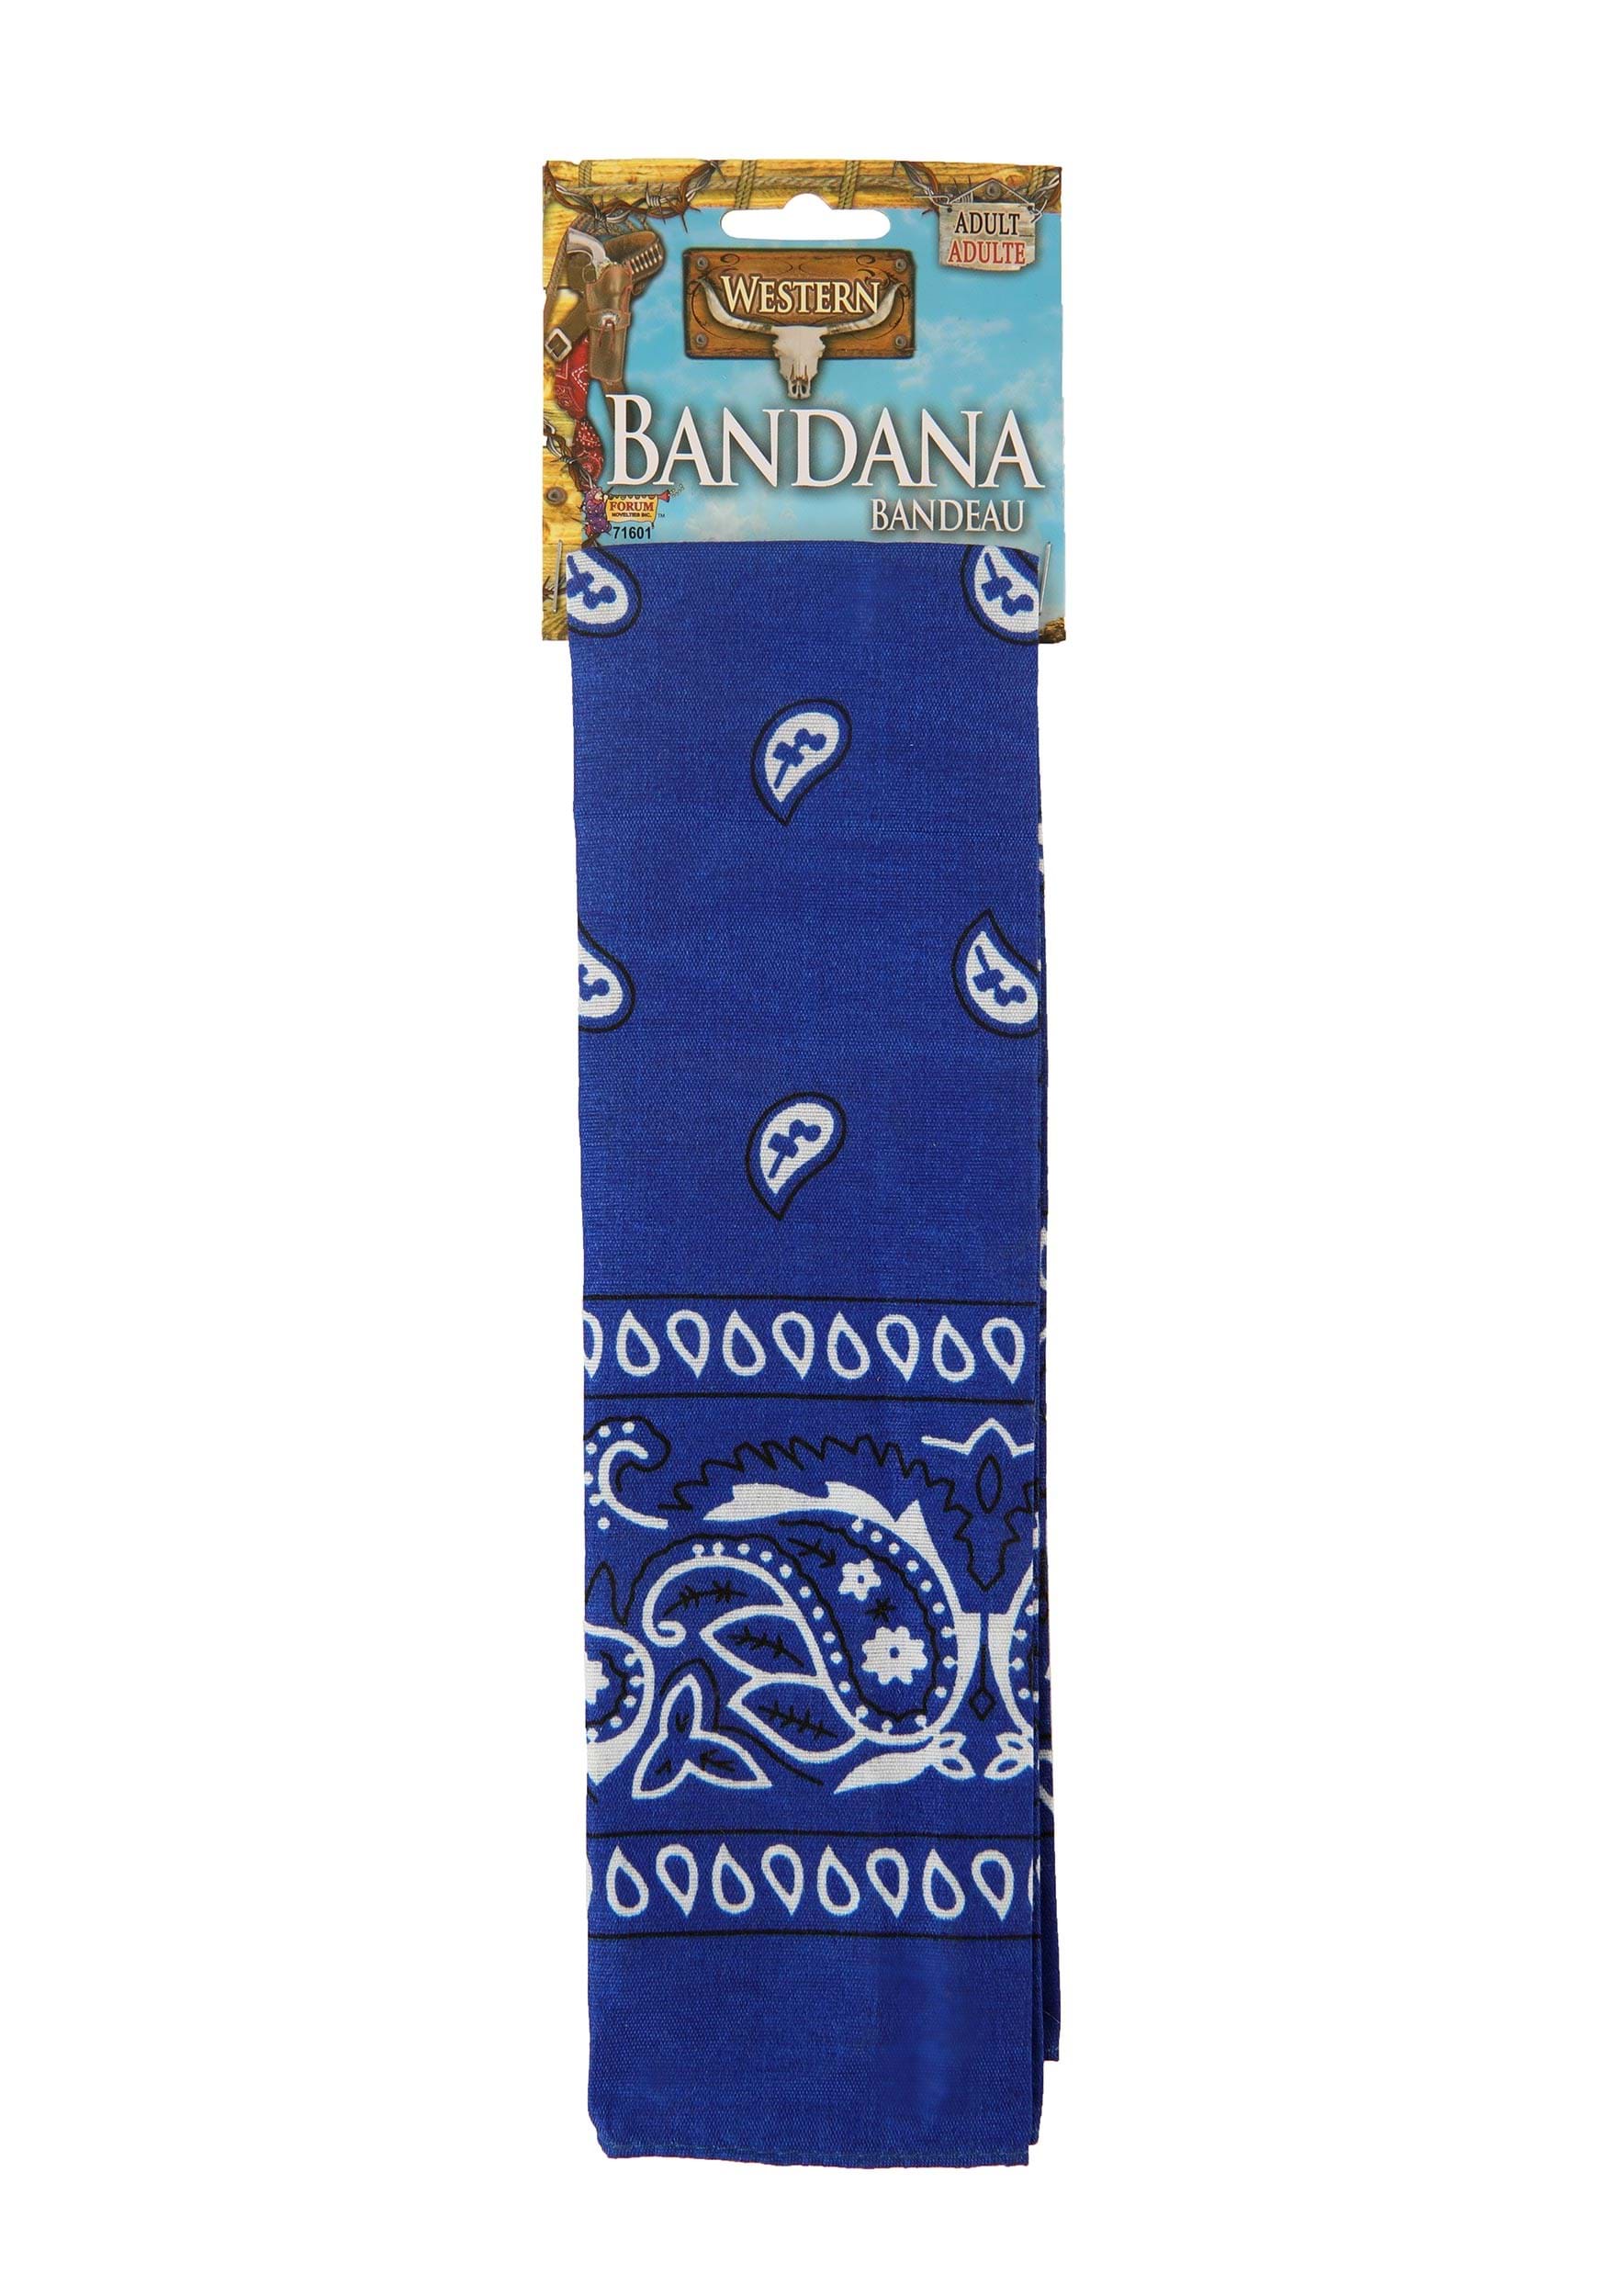 Blue Bandana